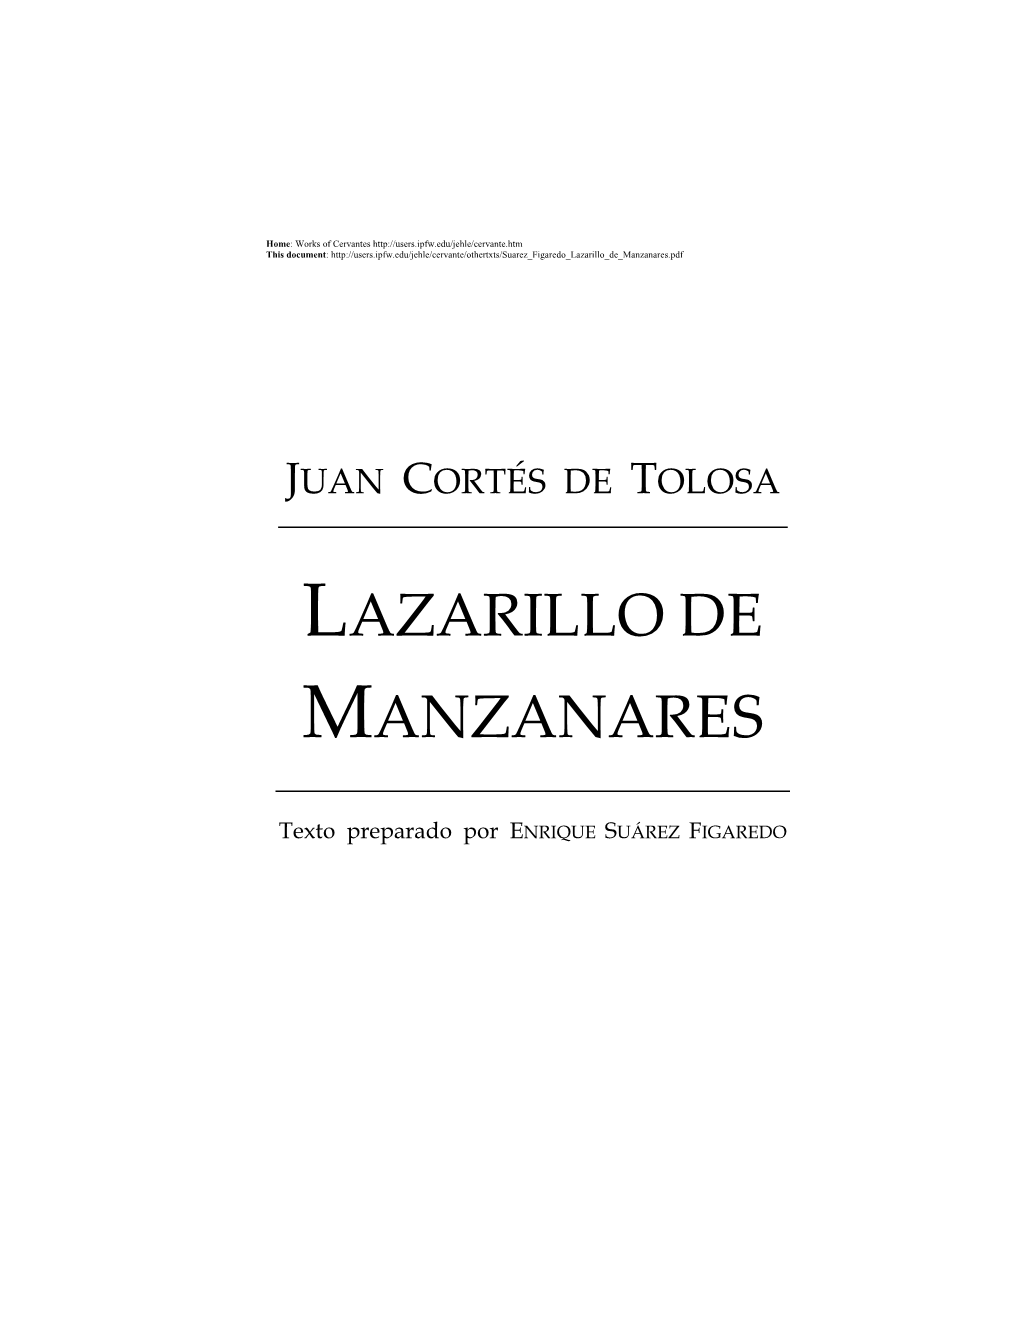 Lazarillo De Manzanares